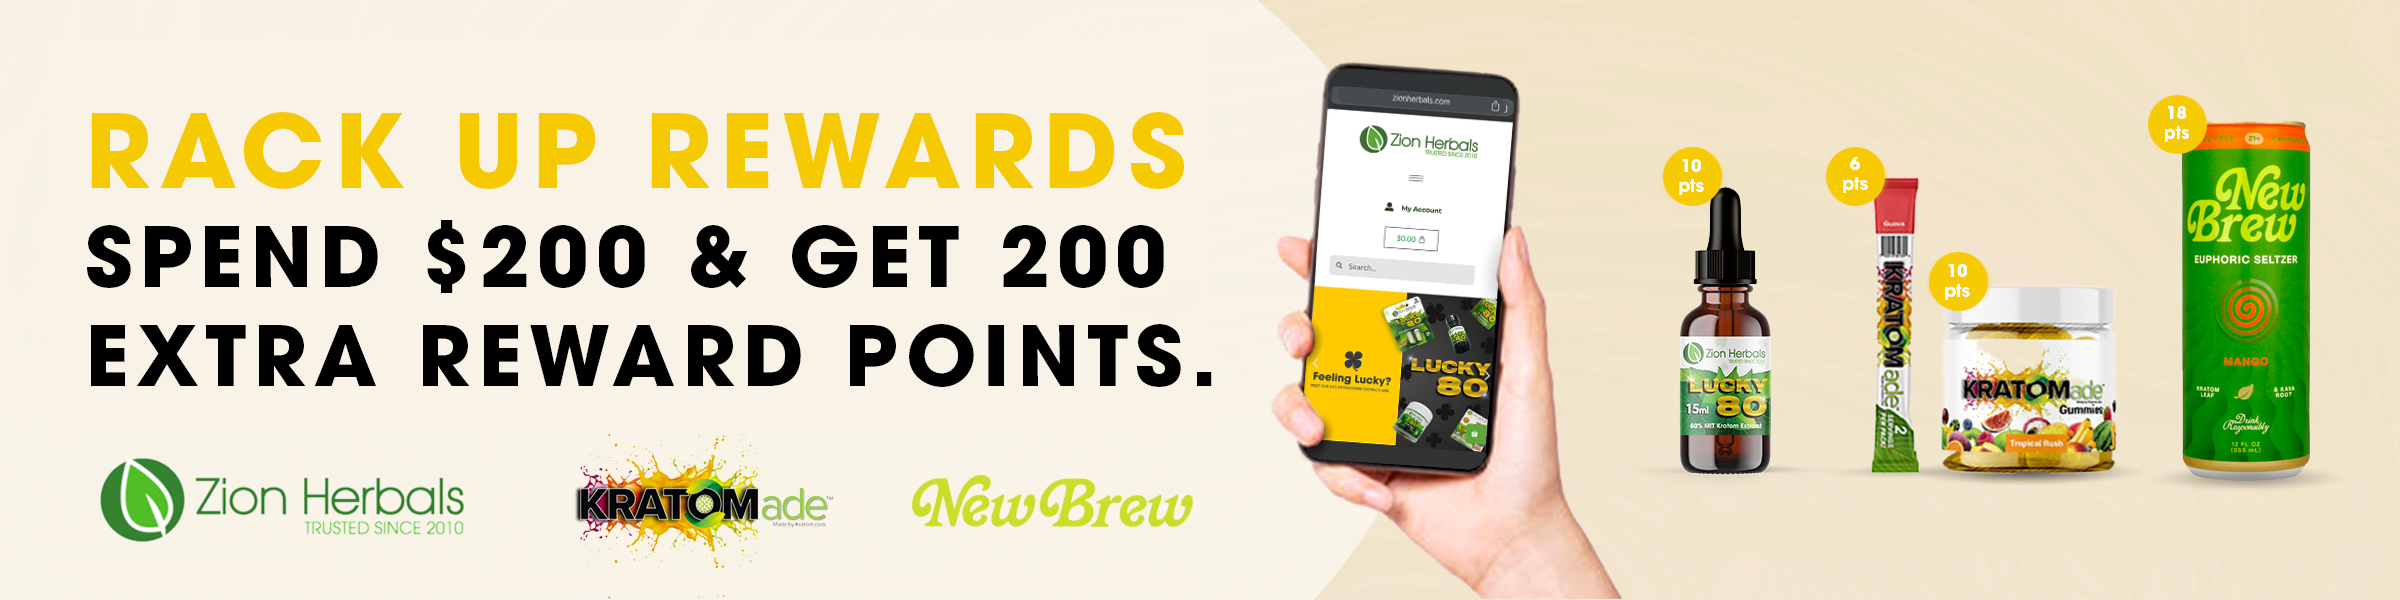 Spend $200 get 200 extra rewards points